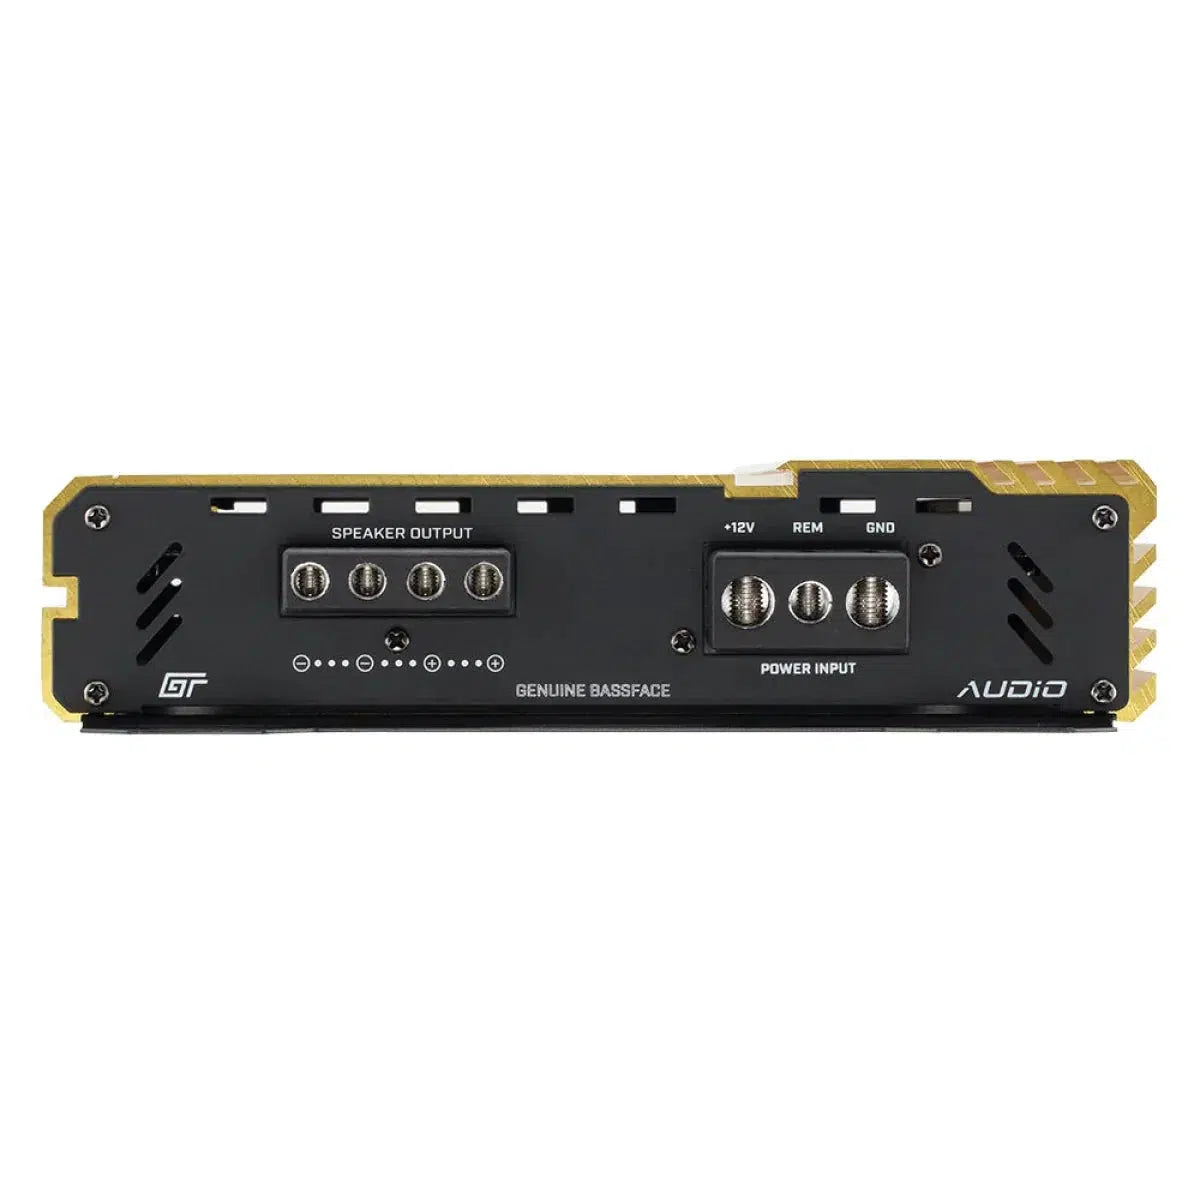 Amplificador de 1 canal Bassface-GT Audio GT-1100/x1D-Masori.de